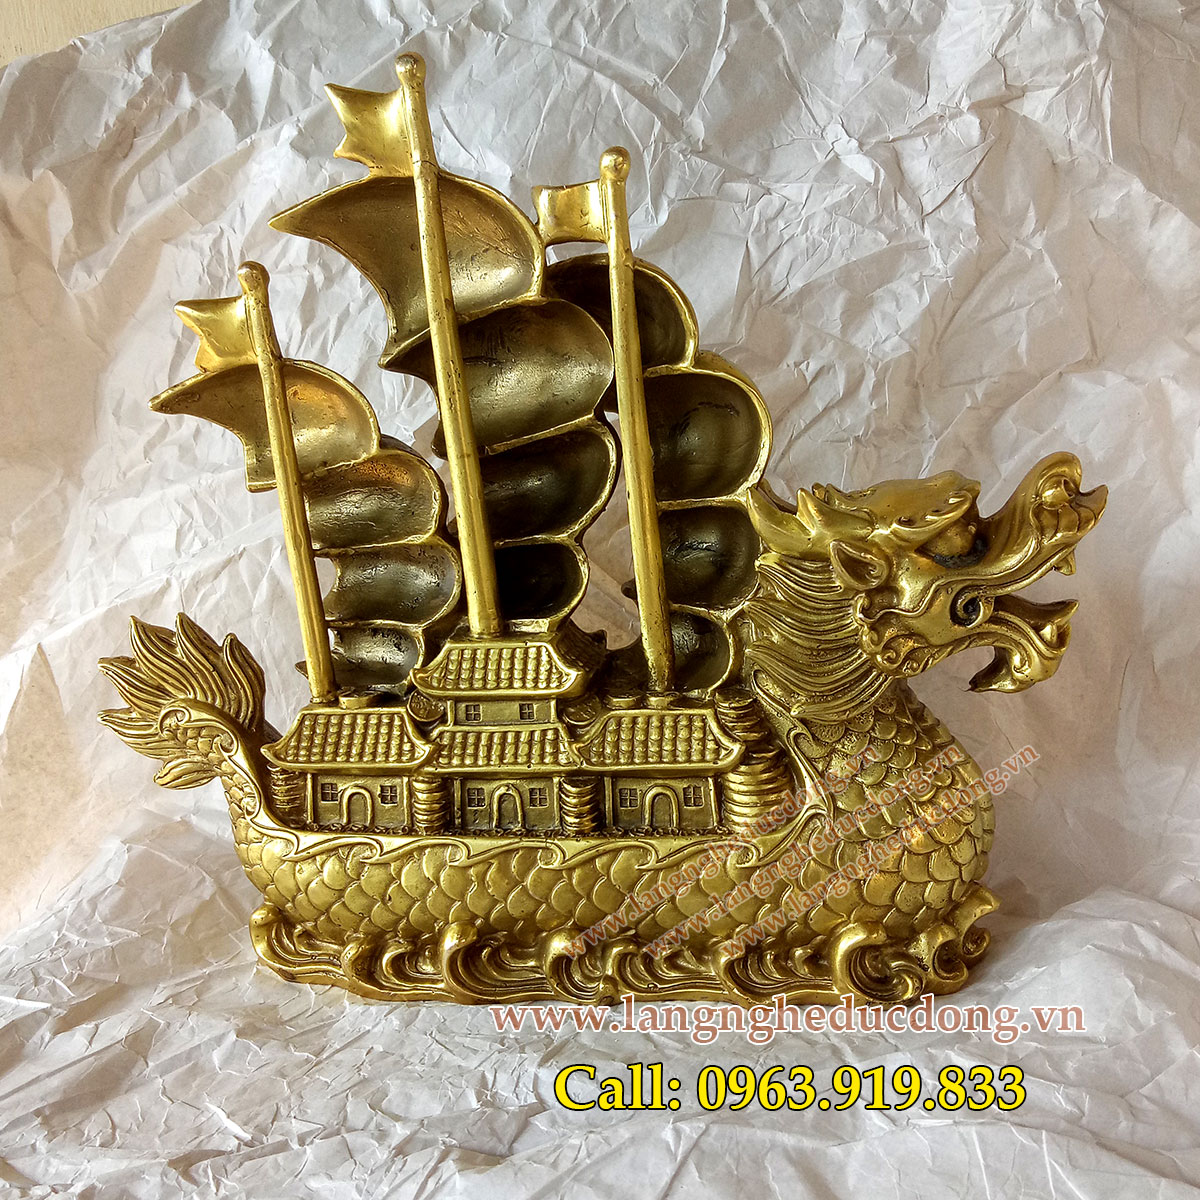 langngheducdong.vn - vật phẩm phong thủy, thuyền đồng, thuyền buồm, thuyền rồng